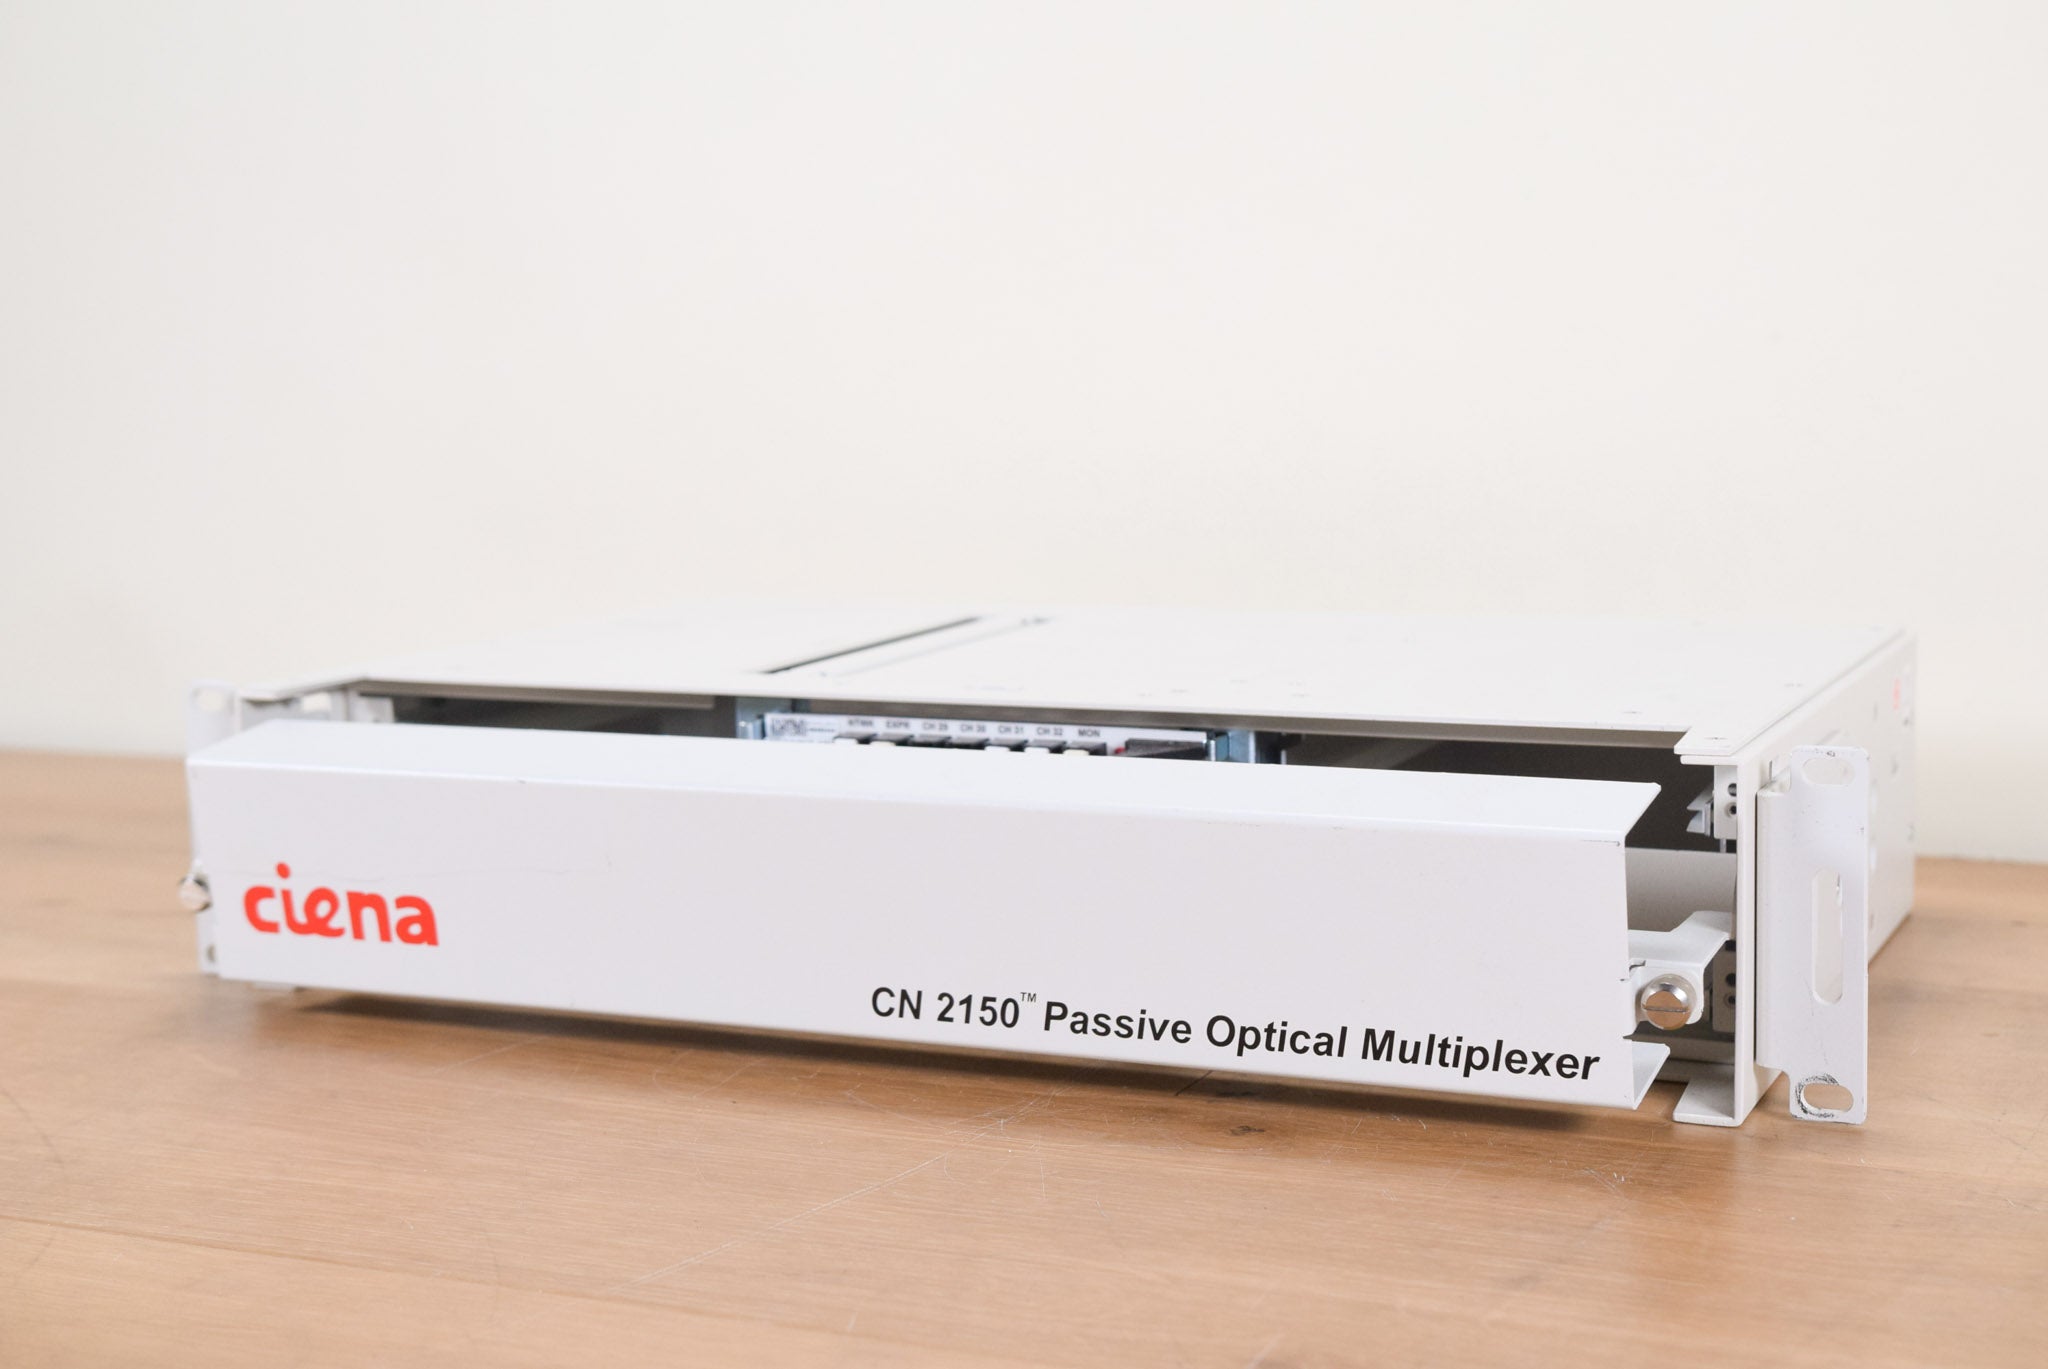 Ciena CN 2150 Passive Optical Multiplexer